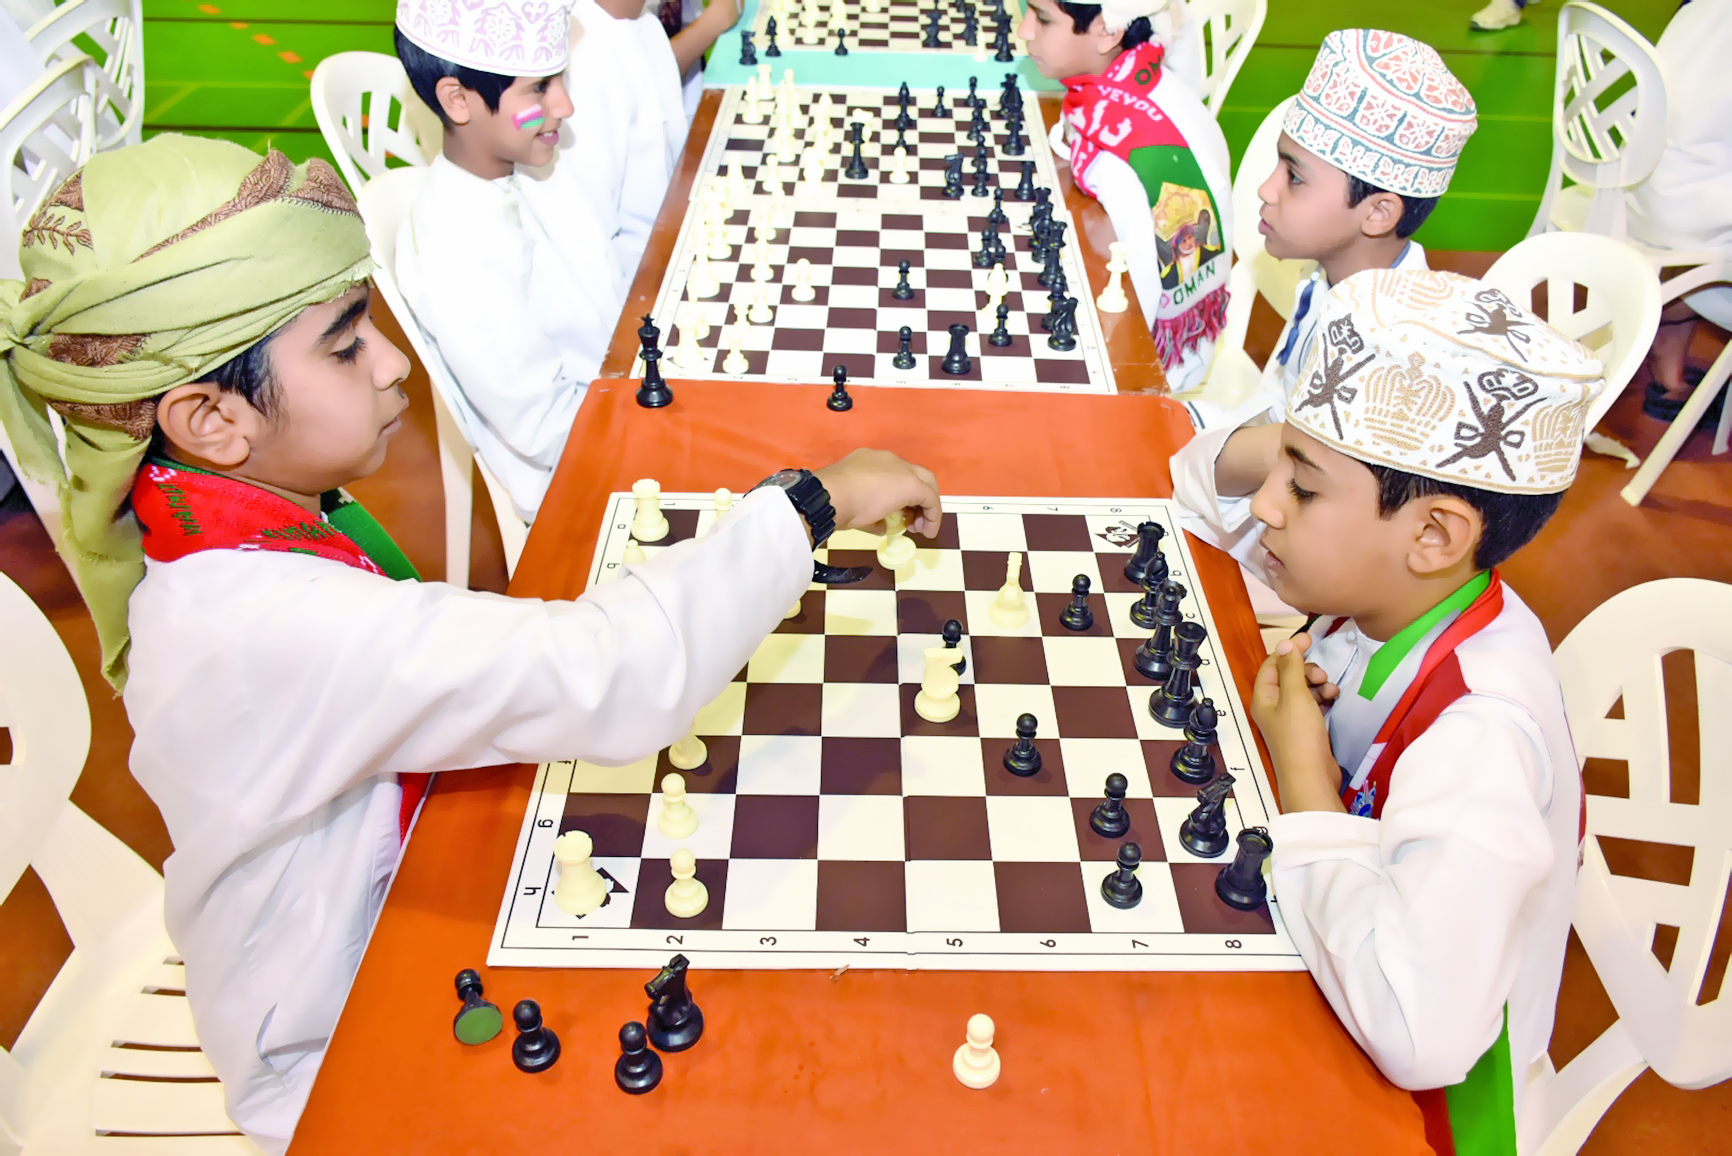 مشاركة واسعة في المهرجان المدرسي للشطرنج بشمال الباطنة